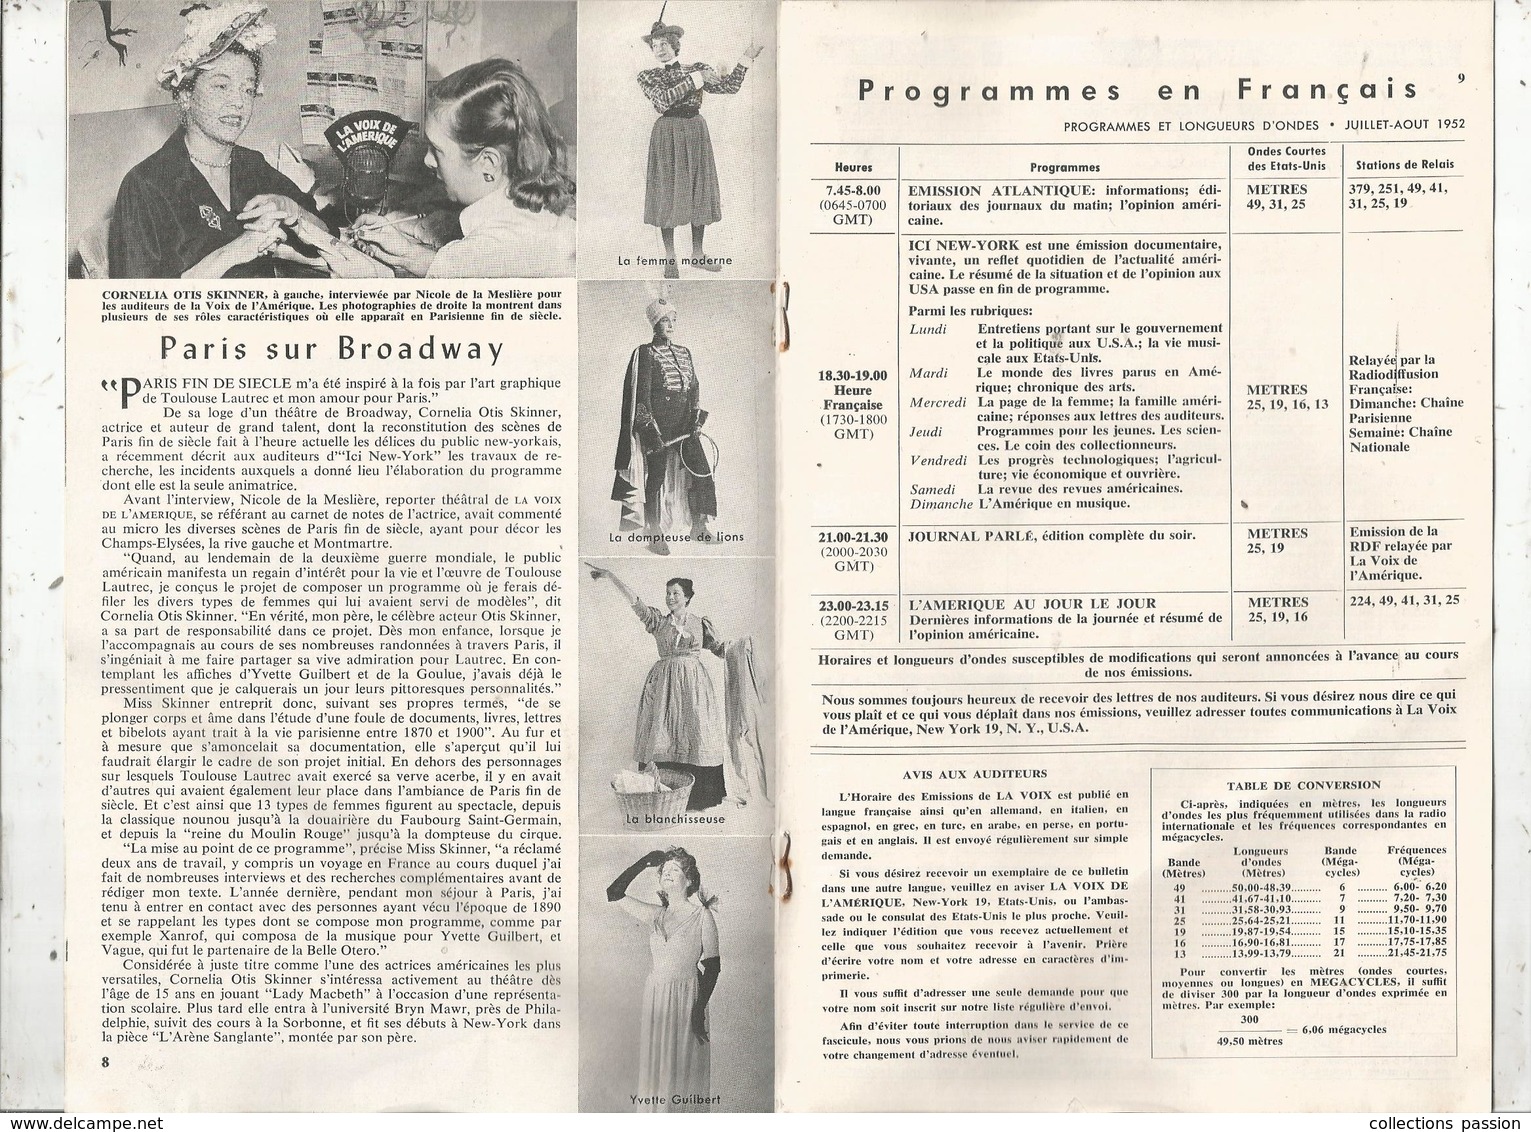 LA VOIX DE L'AMERIQUE ,1952 ,4 Scans ,programmes En Français,15 Pages , Frais Fr 1.95 E - Audio-Visual